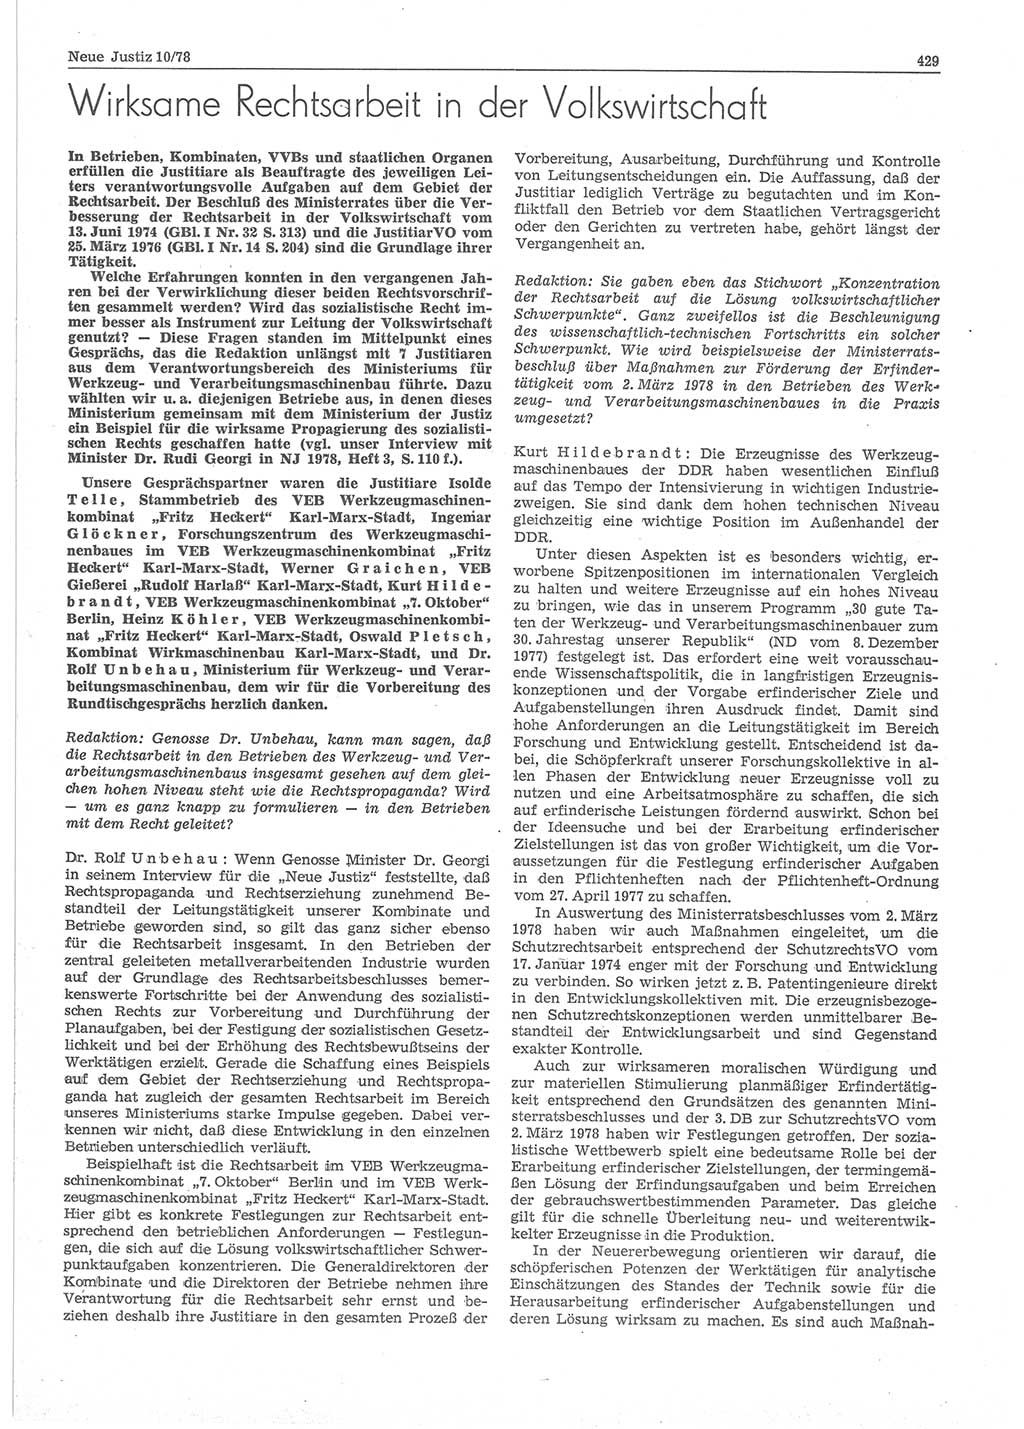 Neue Justiz (NJ), Zeitschrift für sozialistisches Recht und Gesetzlichkeit [Deutsche Demokratische Republik (DDR)], 32. Jahrgang 1978, Seite 429 (NJ DDR 1978, S. 429)